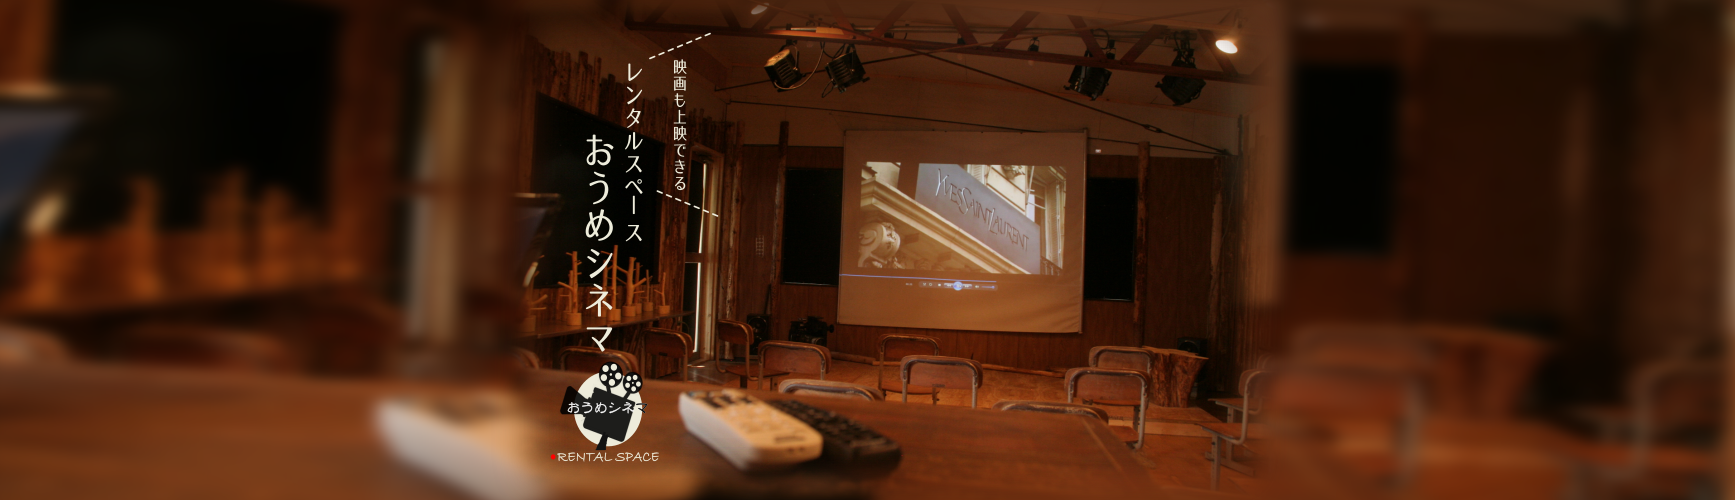 羽村市周辺のレンタルスペース・貸し会議室「おうめシネマ」のイメージ画像